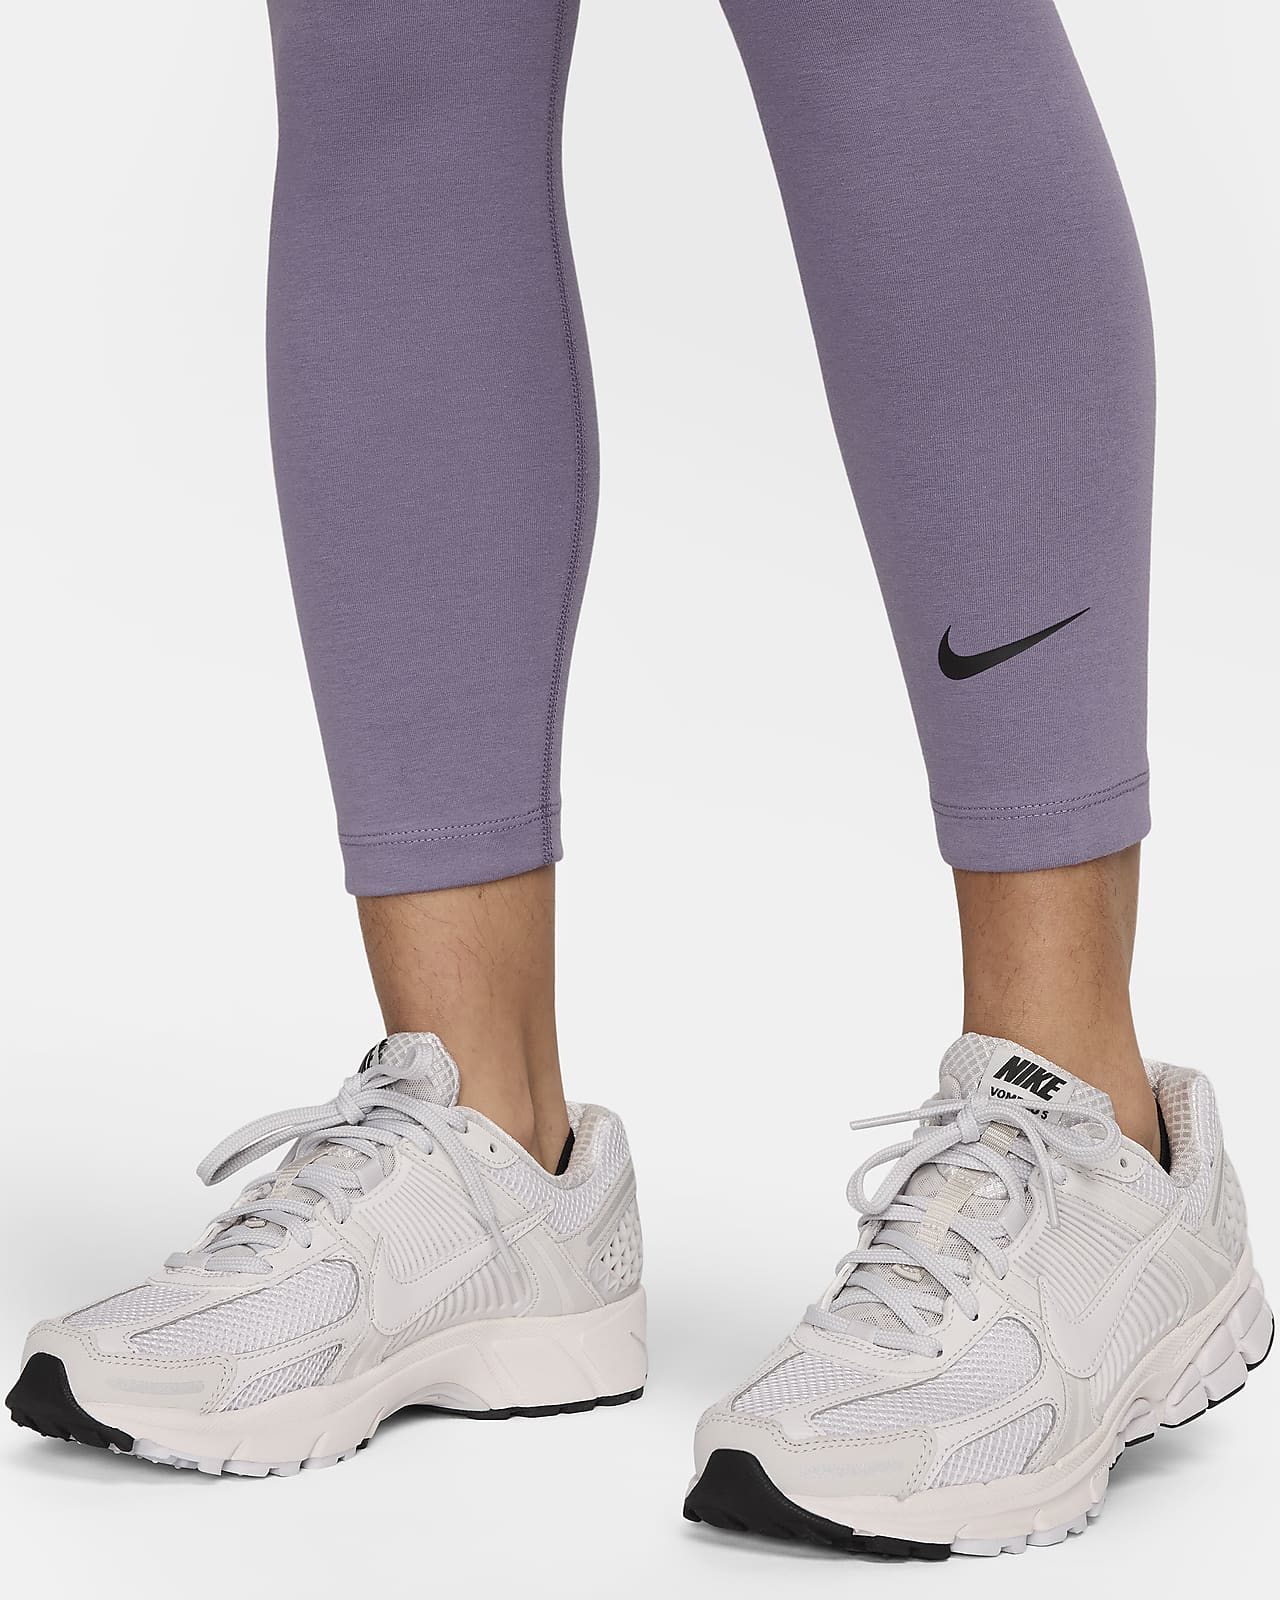 Nike Ankle Length Denim Leggins, Jeggings